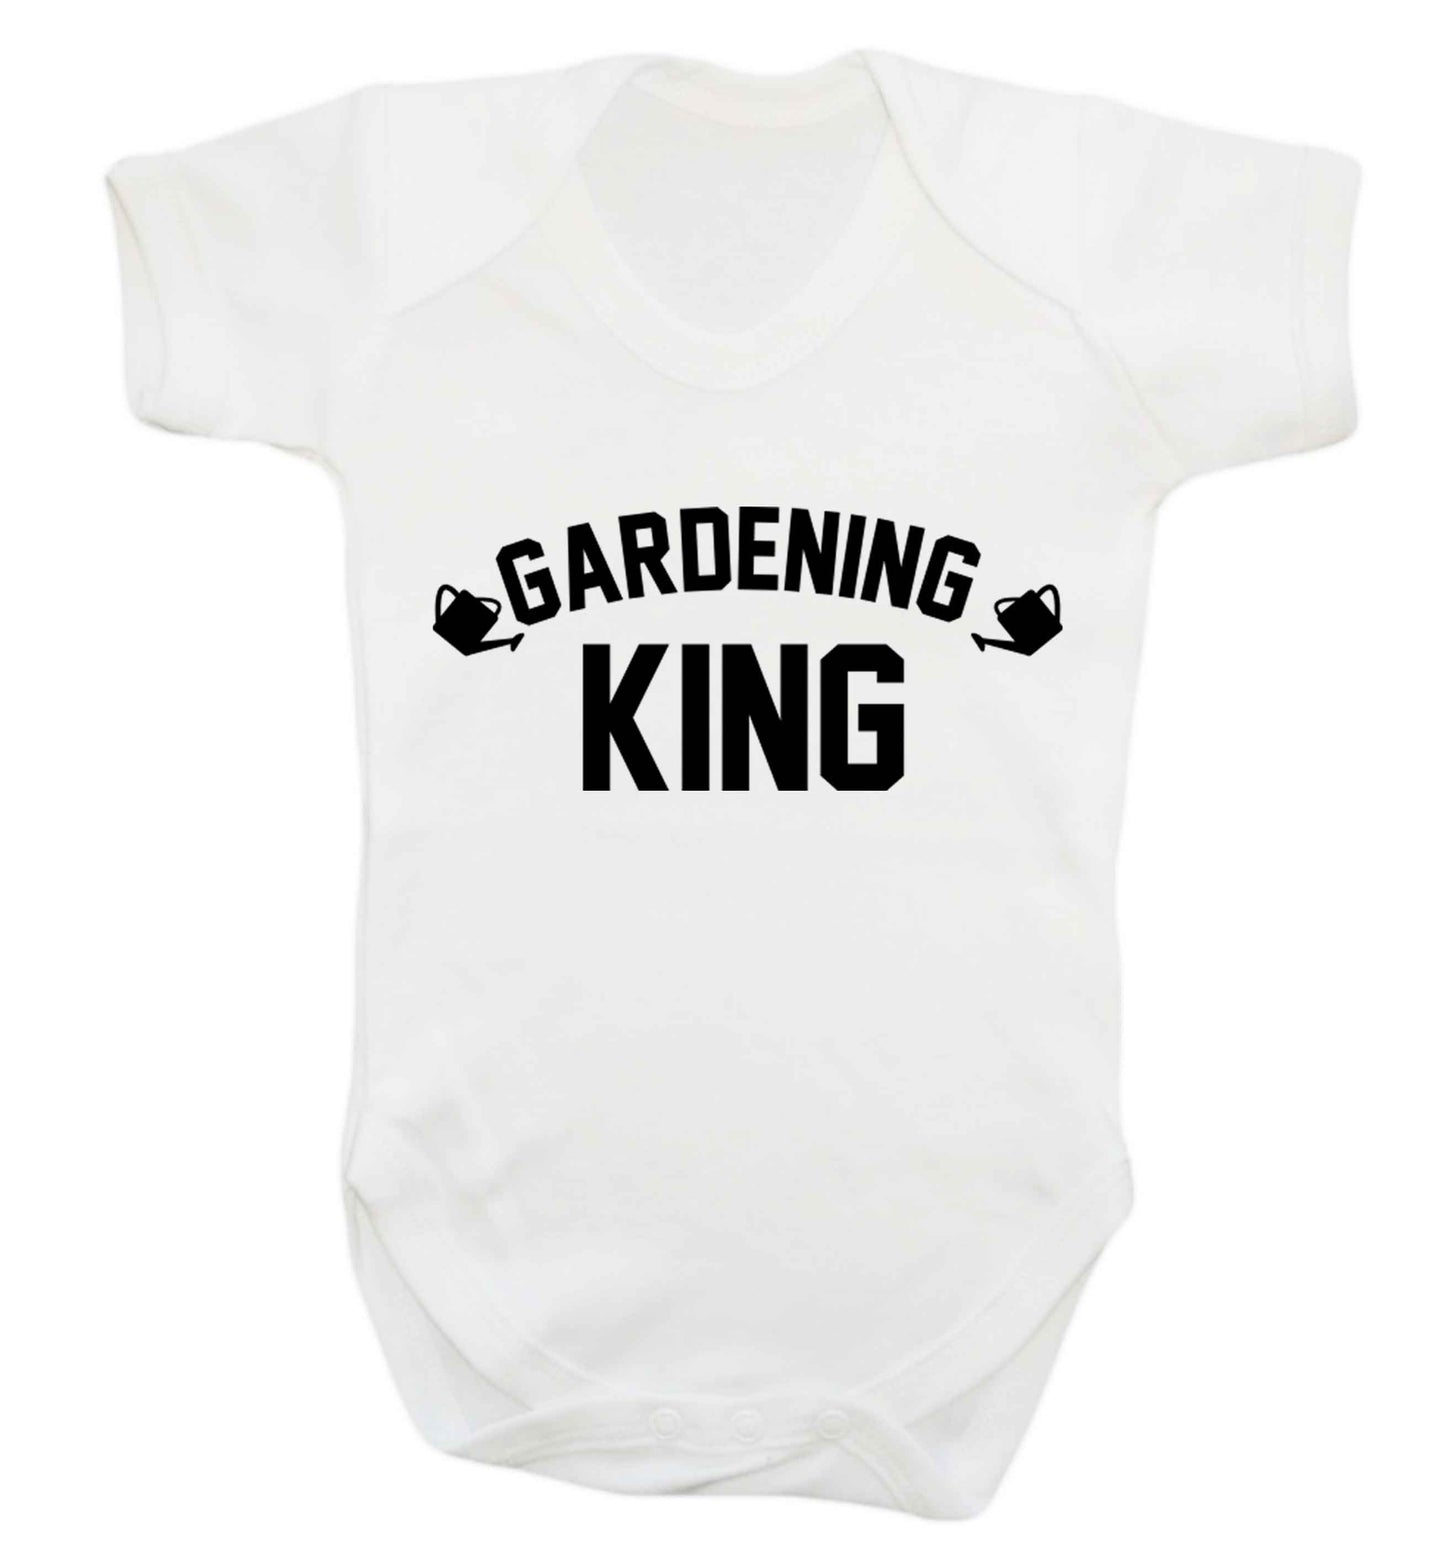 Gardening king Baby Vest white 18-24 months